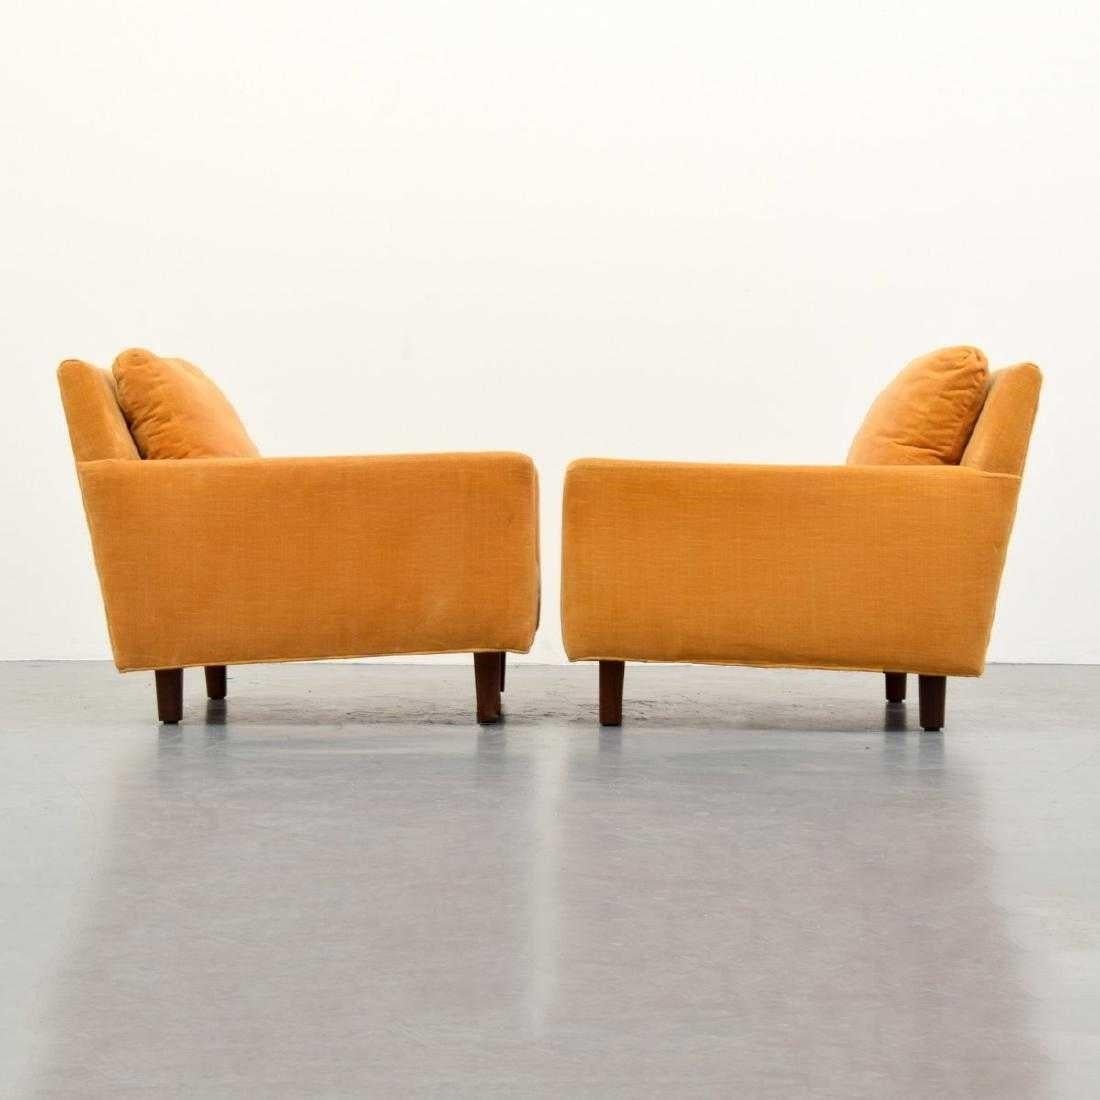 Cette paire confortable de chaises longues du milieu du siècle dernier a été conçue par Milo Baughman pour Thayer Coggin. Tapissé professionnellement d'un tissu en velours de couleur orange/jaune avec des pieds en bois massif.